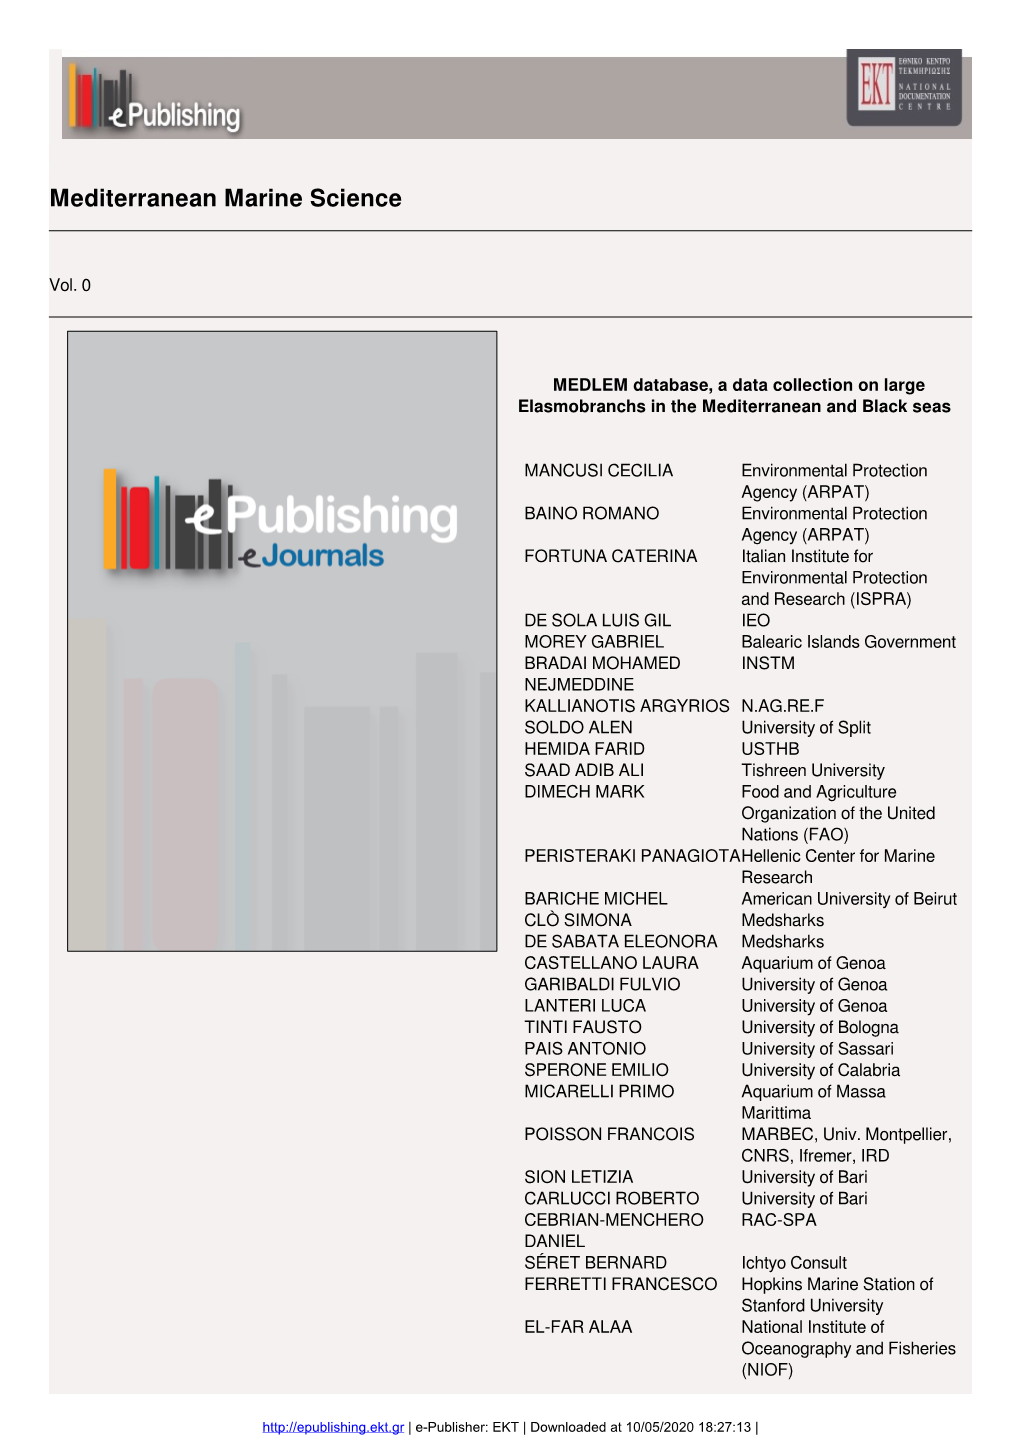 2020 MEDLEM Database, a Data Collection on Large Elasmobranchs